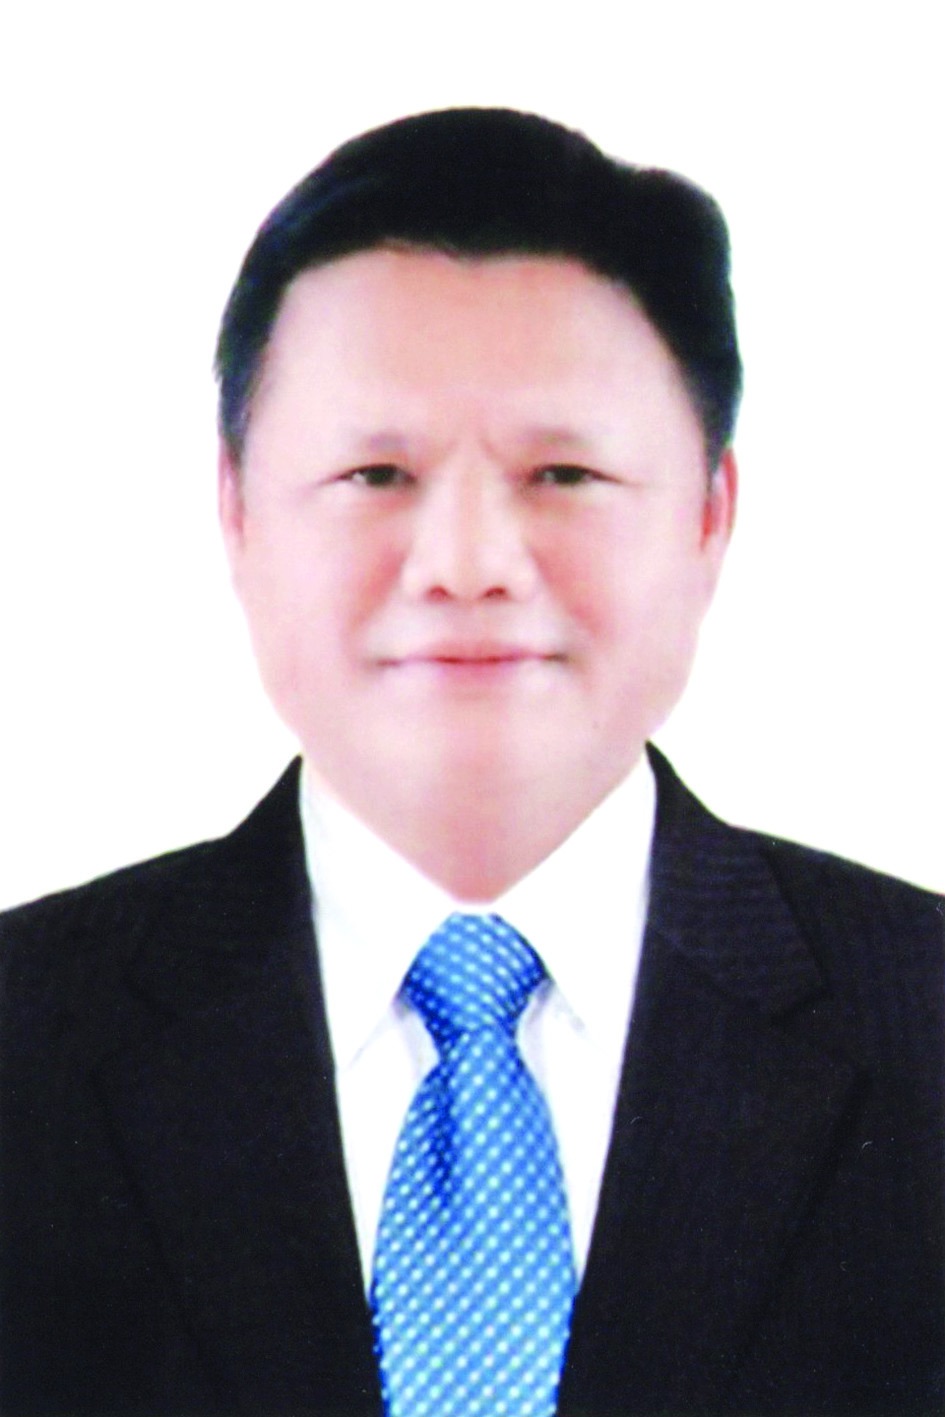 Chương trình hành động của Trưởng ban Tổ chức Thành ủy Hà Nội Vũ Đức Bảo, ứng cử viên đại biểu HĐND TP Hà Nội nhiệm kỳ 2021 - 2026 - Ảnh 1